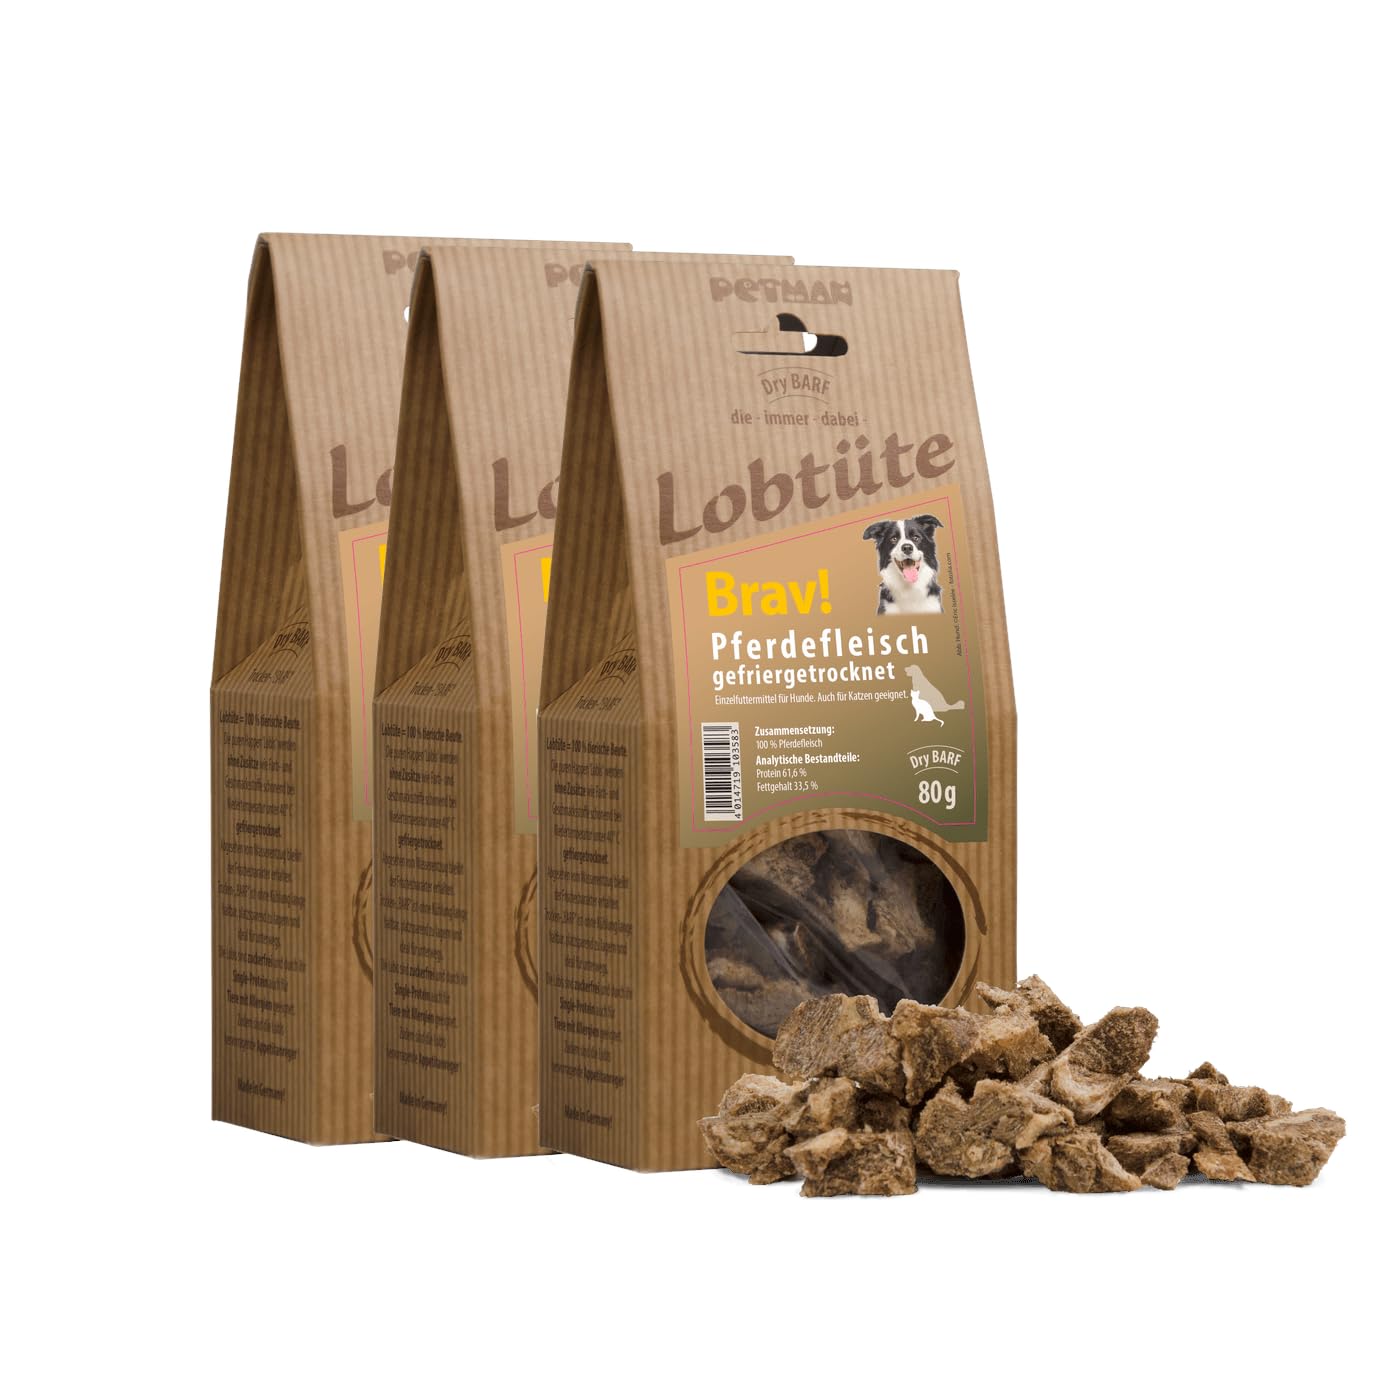 PETMAN Lobtüte BRAV! Pferdefleisch 3x80g – Hundefutter Snack - Proteinreiches Einzelfuttermittel für Hunde und Katzen, Barf-geeignet - Made in Germany